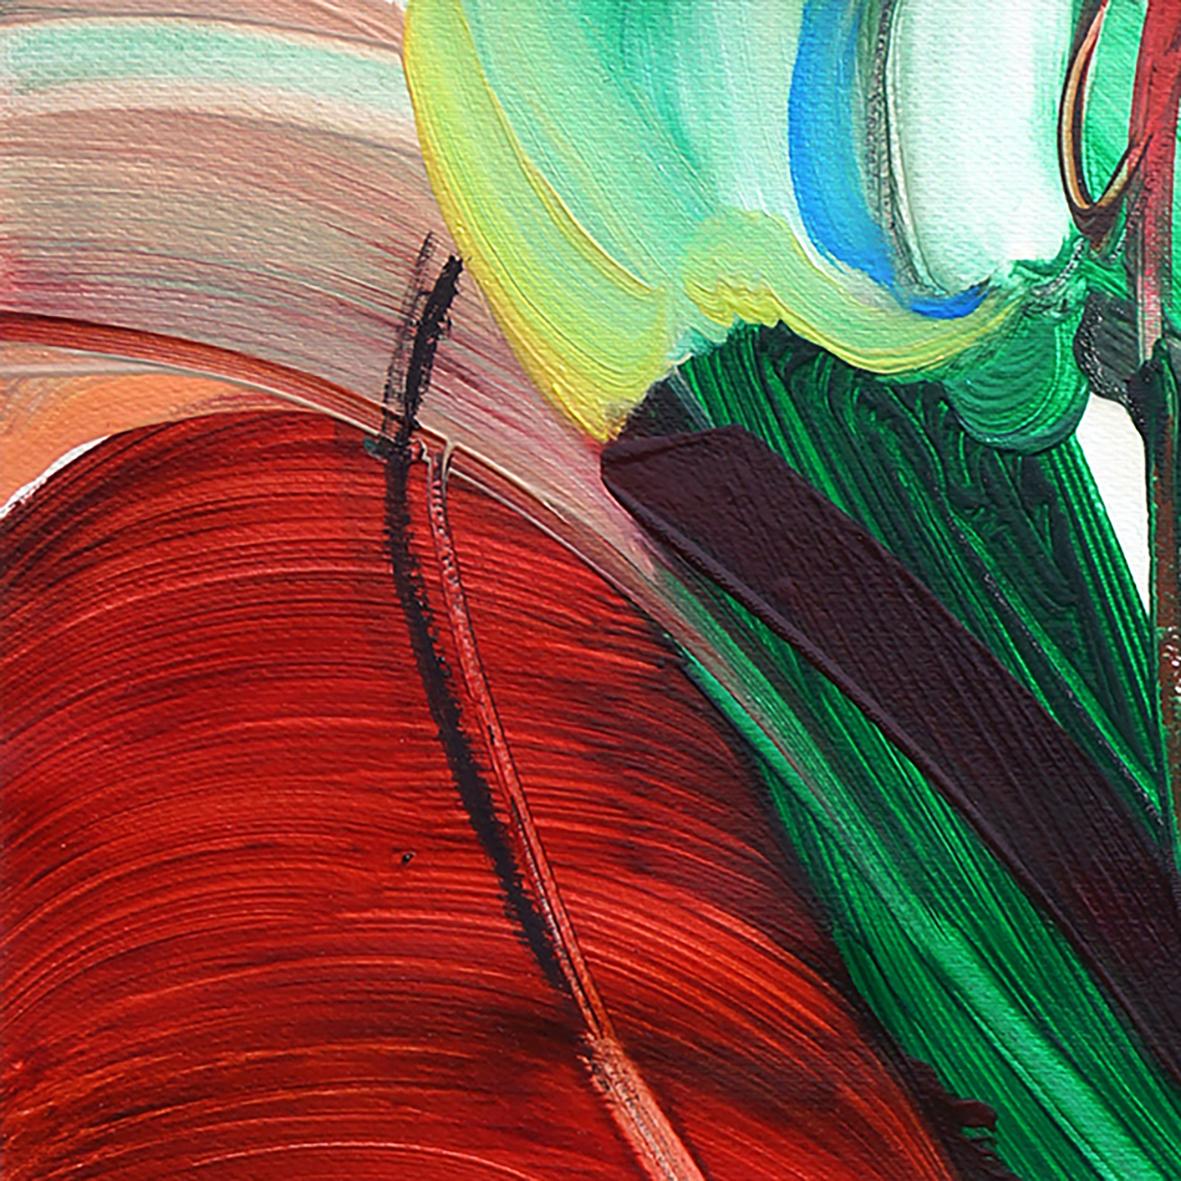 Flow like a breeze #3, Oil on paper, 100 x 70cm, 2021 - Art by Hannah Shin 